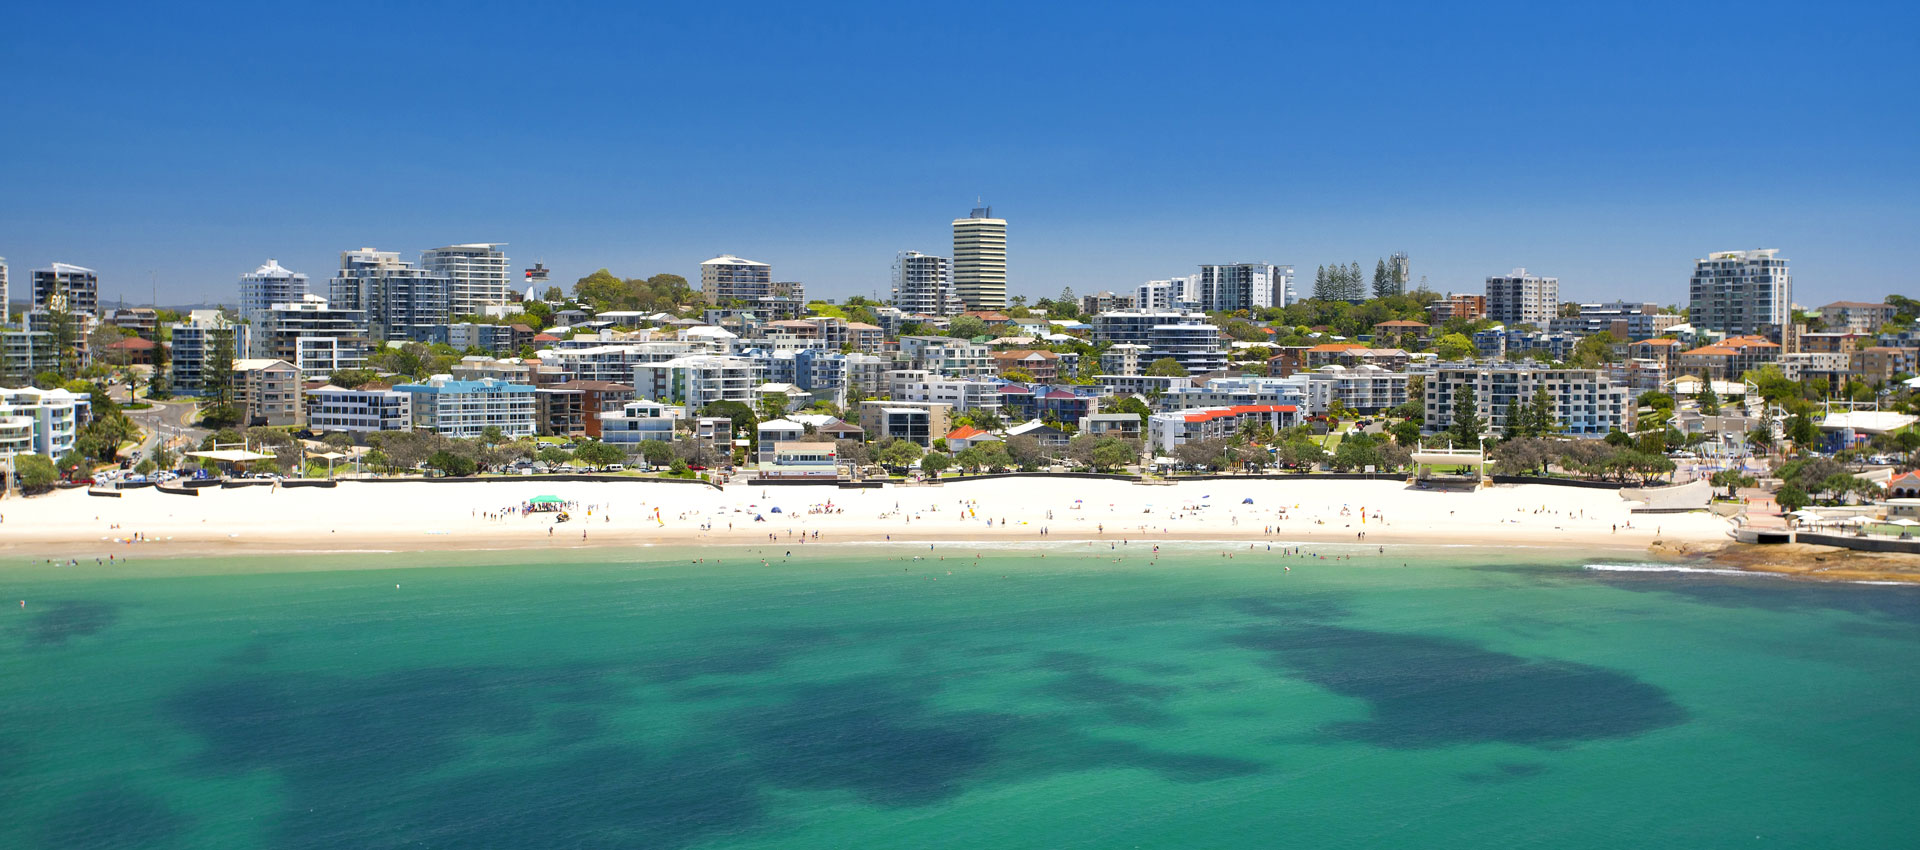 New Sunshine Coast Planning Scheme